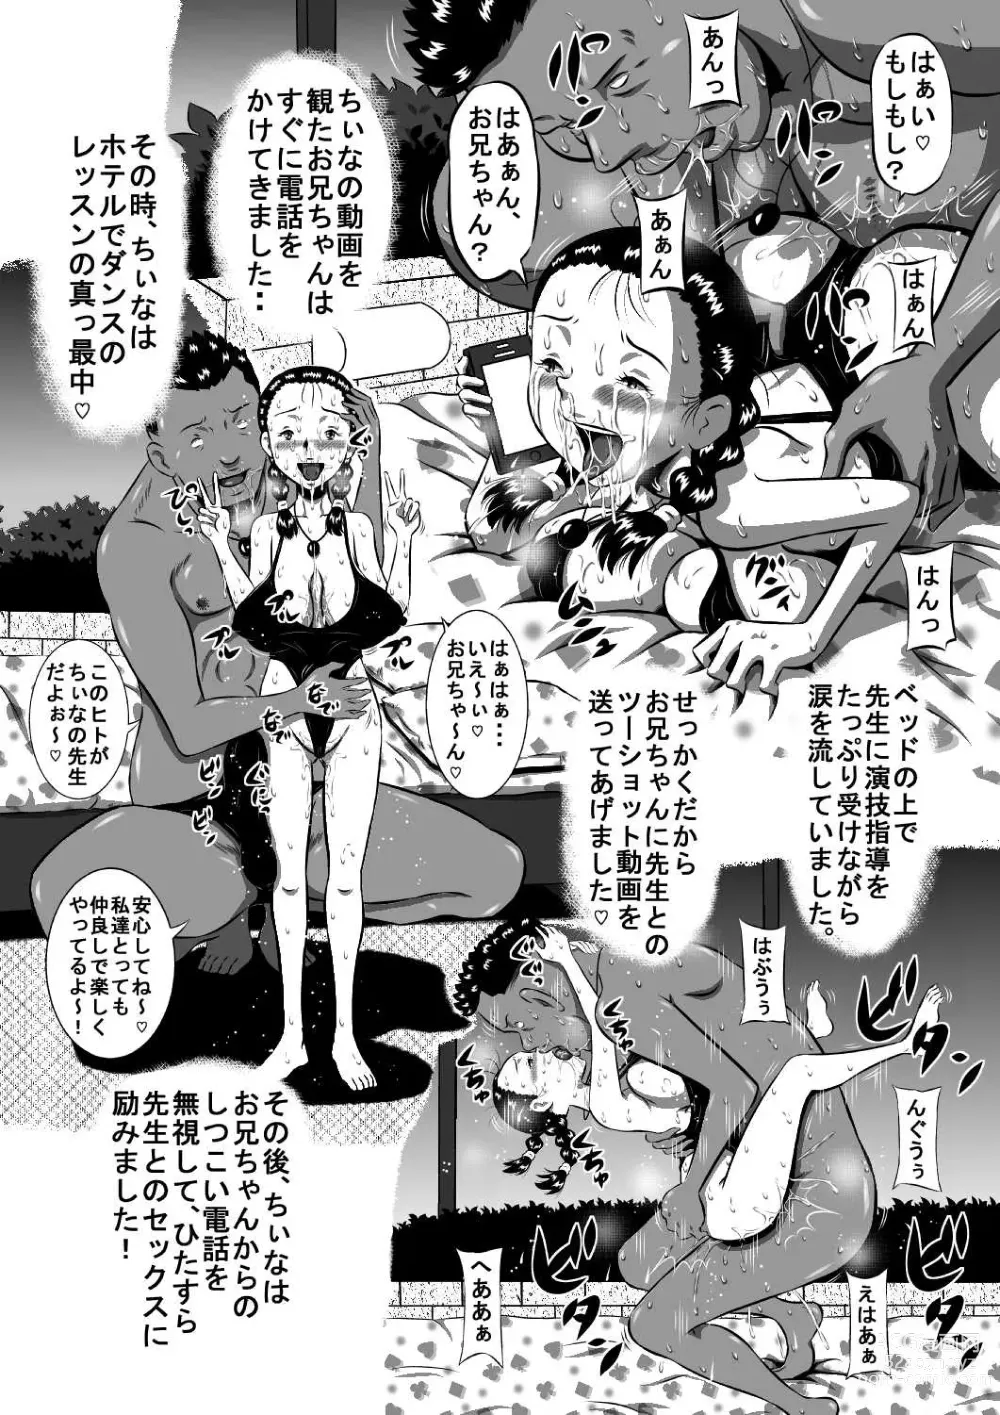 Page 22 of doujinshi Okasaresou no Chiina-chan! Nude Model no Tamago, Chiina no Nikutai Seichou Kiroku! Kouhen Minna de Chiina no Ochichi, Konekurimawashite~!